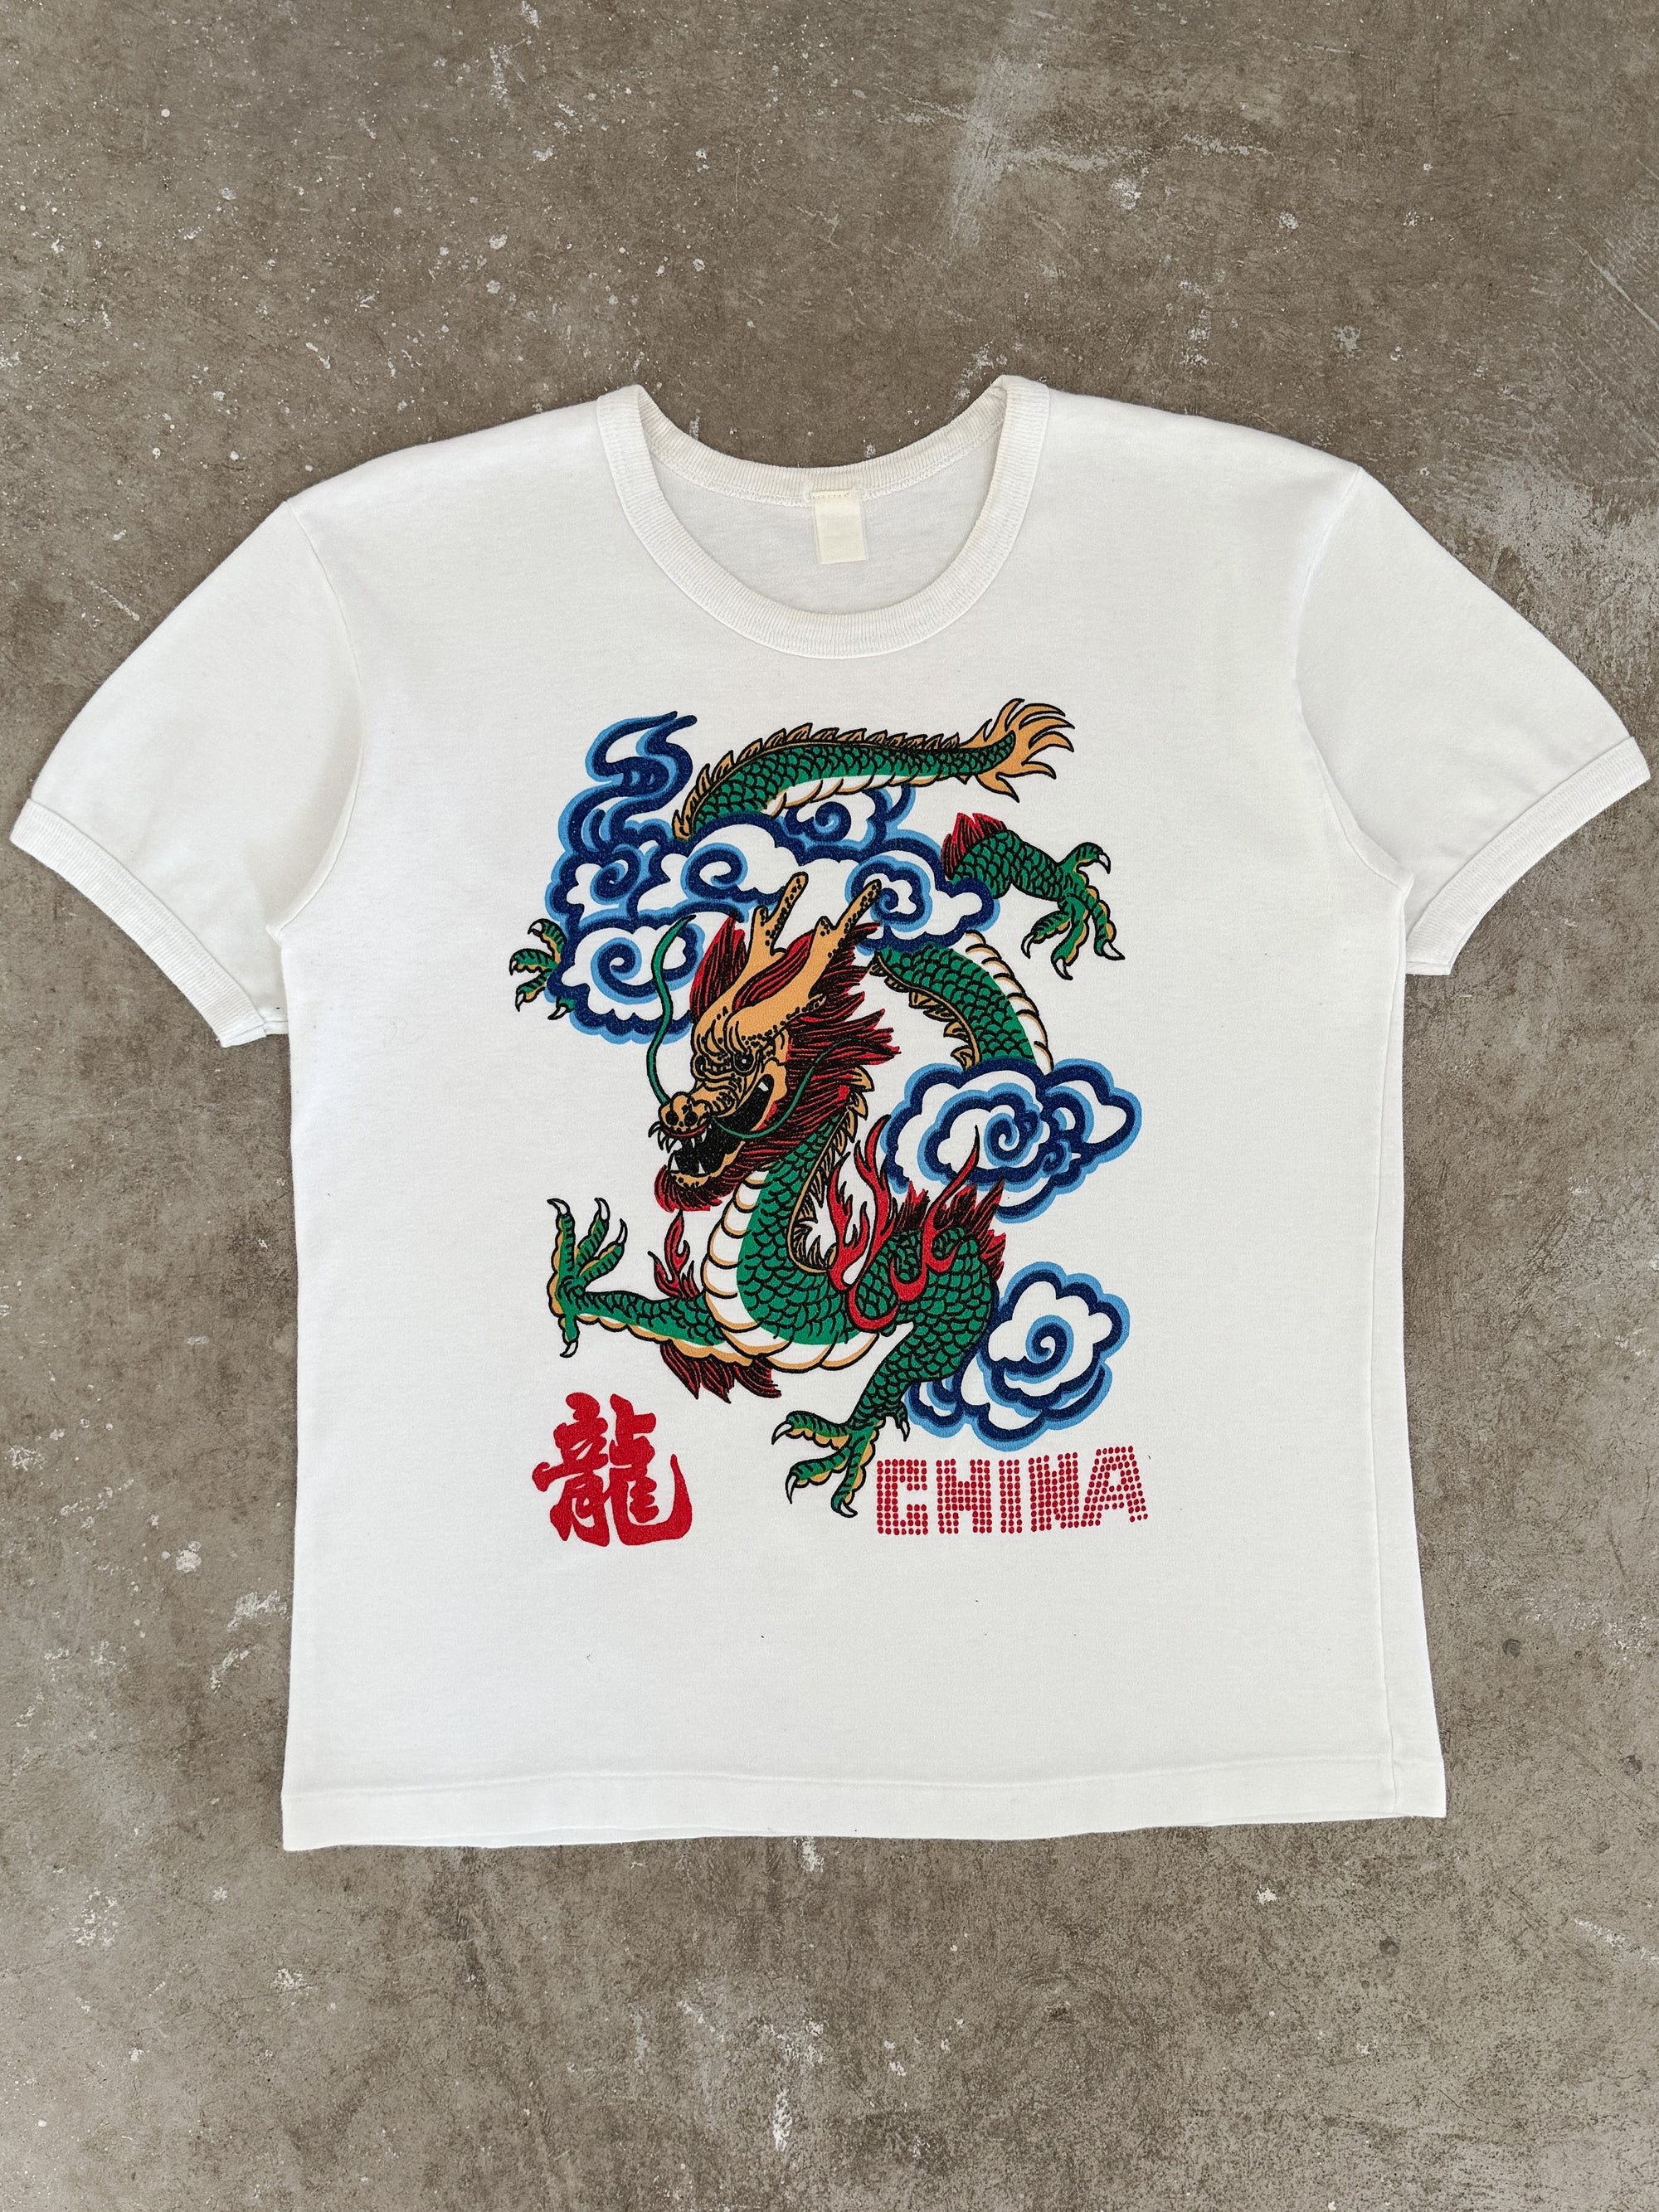 1980s "China" Tee (S/M)